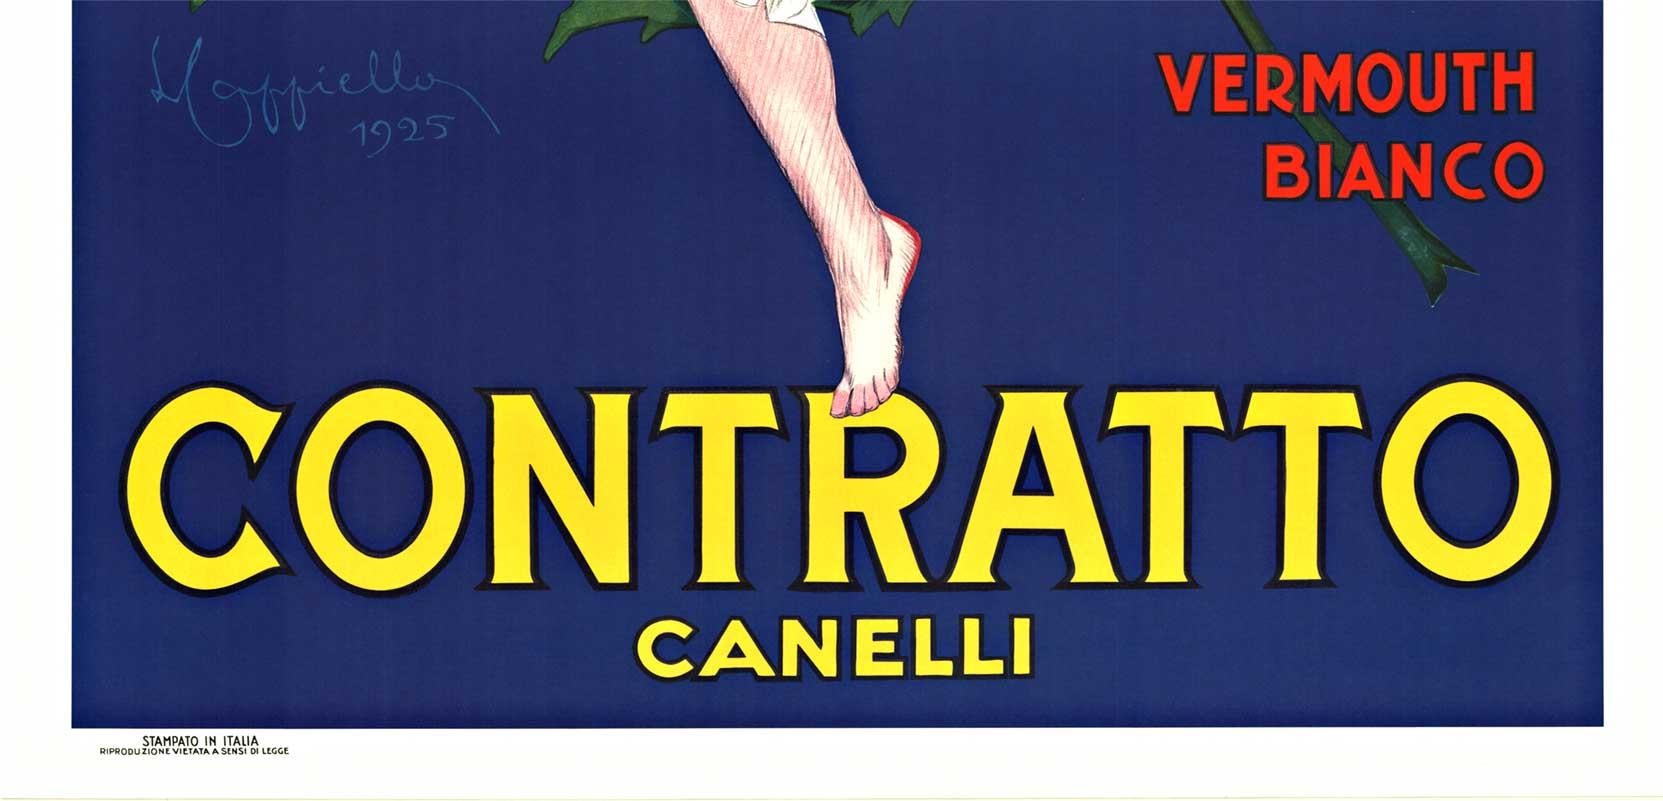 Cappiello's Contratto Canelli Vermouth - later printing - American Modern Print by Leonetto Cappiello